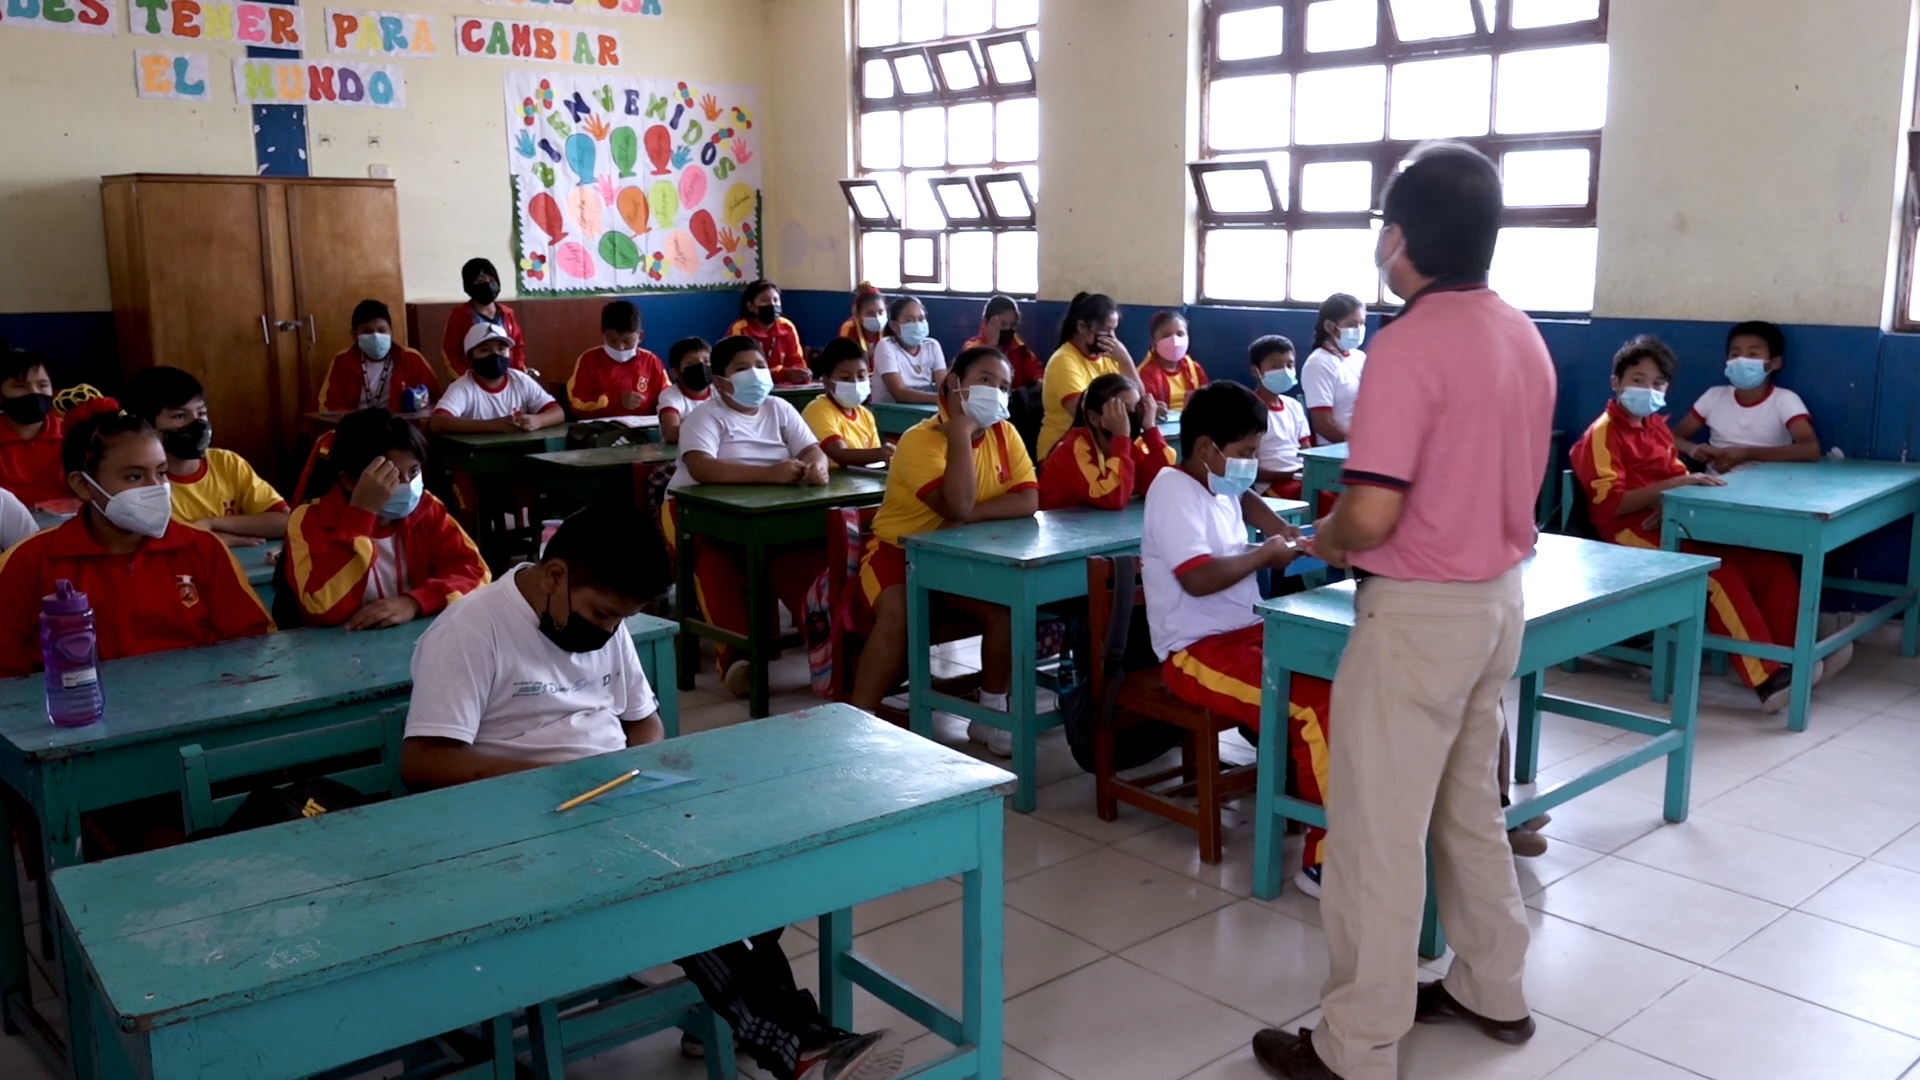 PERU PUBLIC SCHOOLS | Global Earthquake Model Foundation